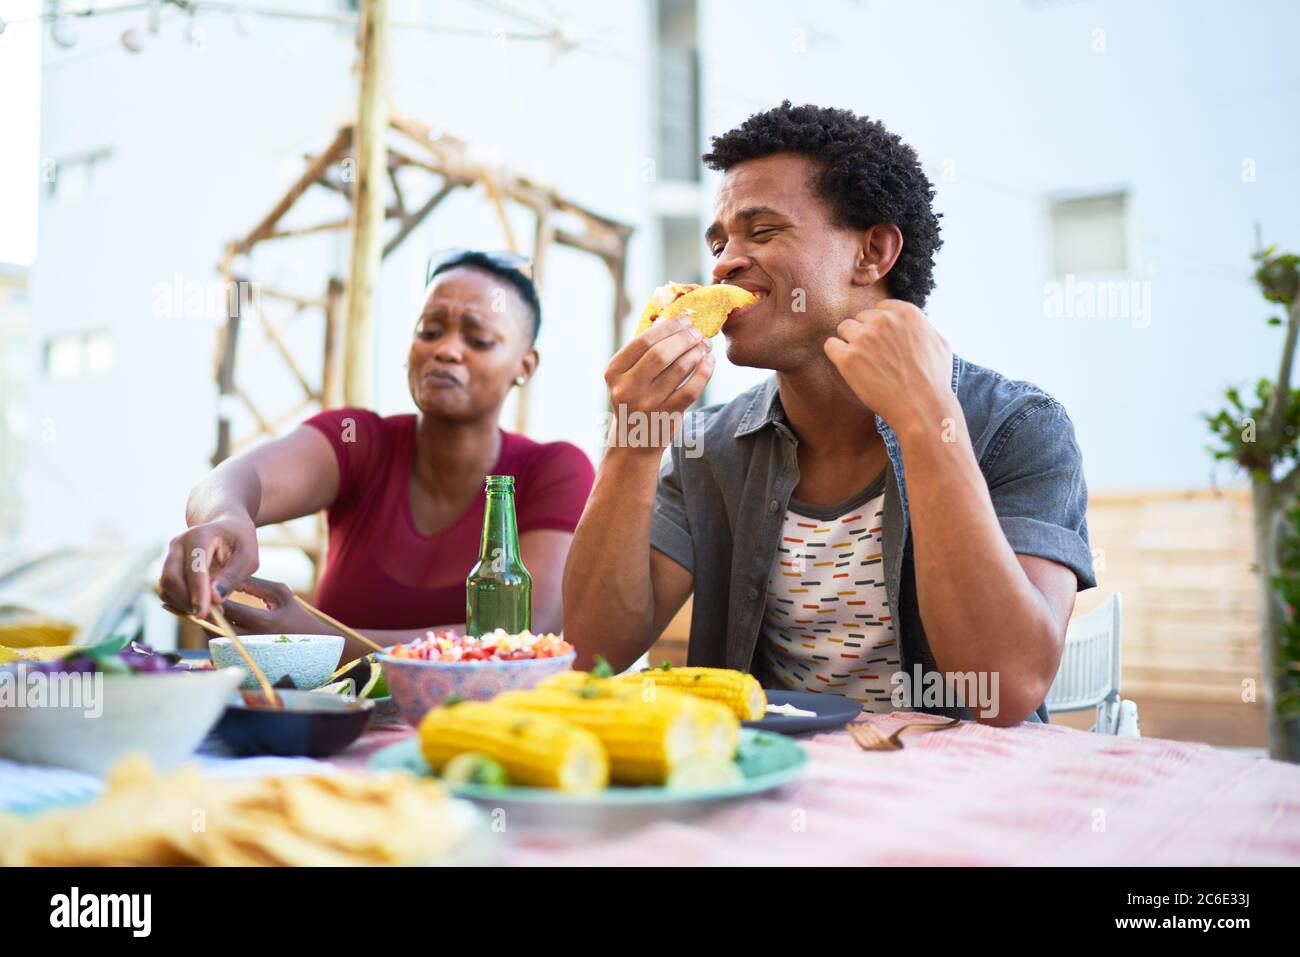 Un jeune homme mange un déjeuner à tacos à la table du patio Banque D'Images